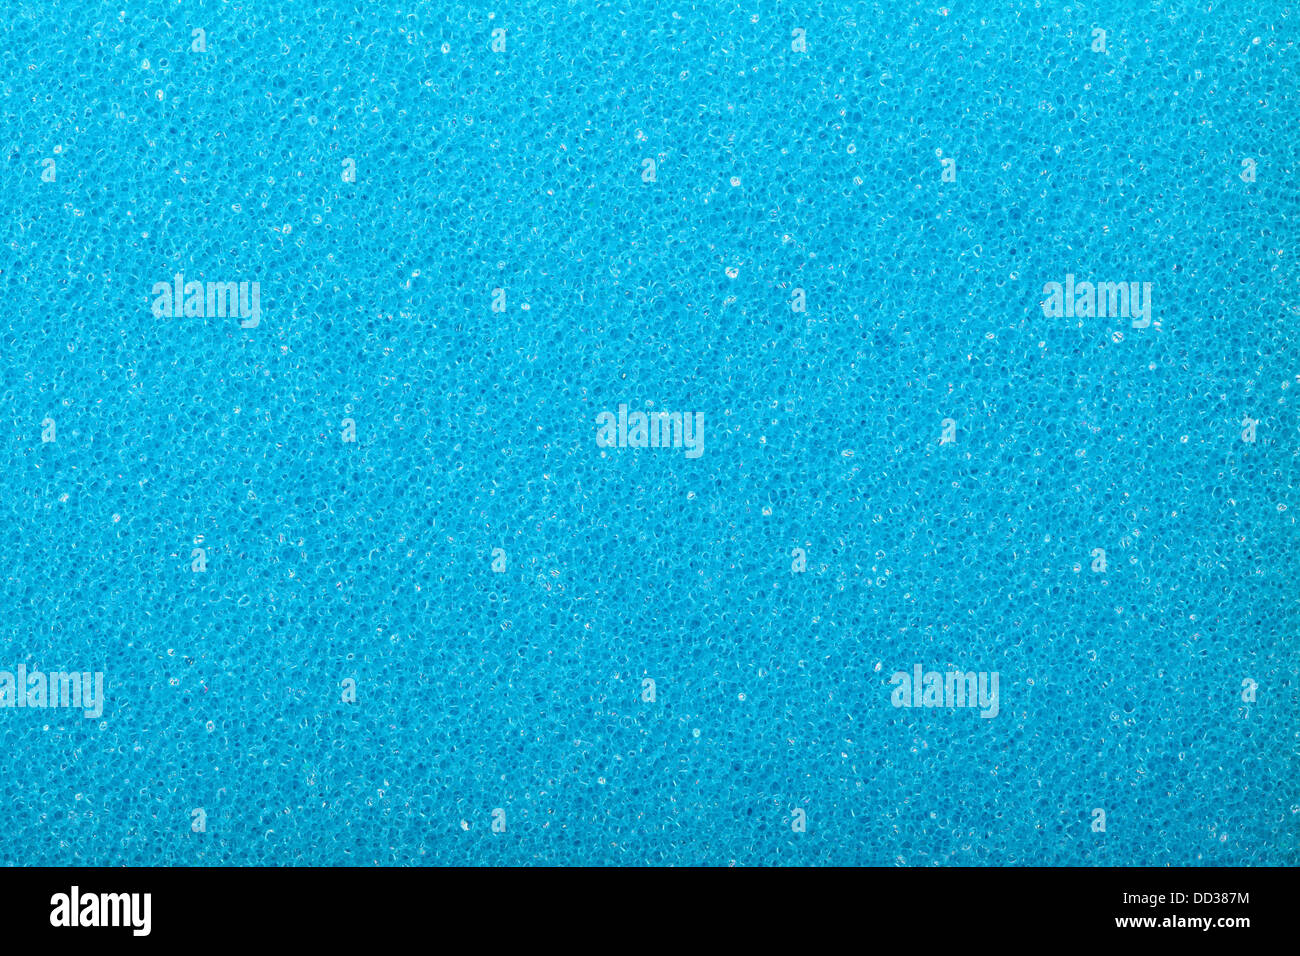 Textura azul esponja de espuma de celulosa - fondo. Foto de stock